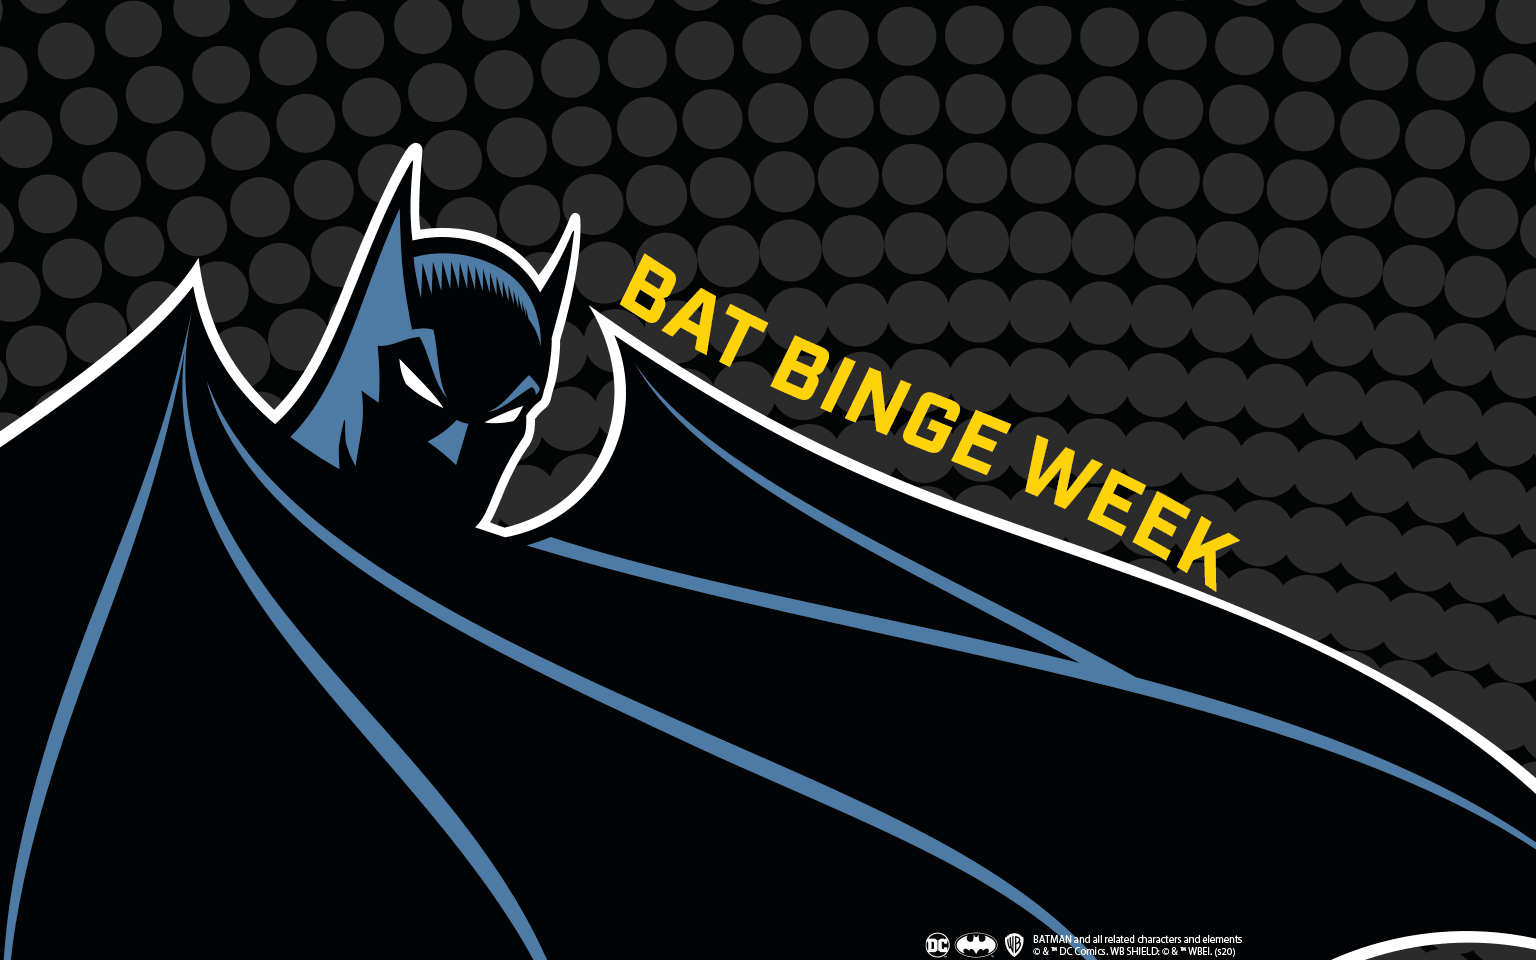 Bat-Binge Week